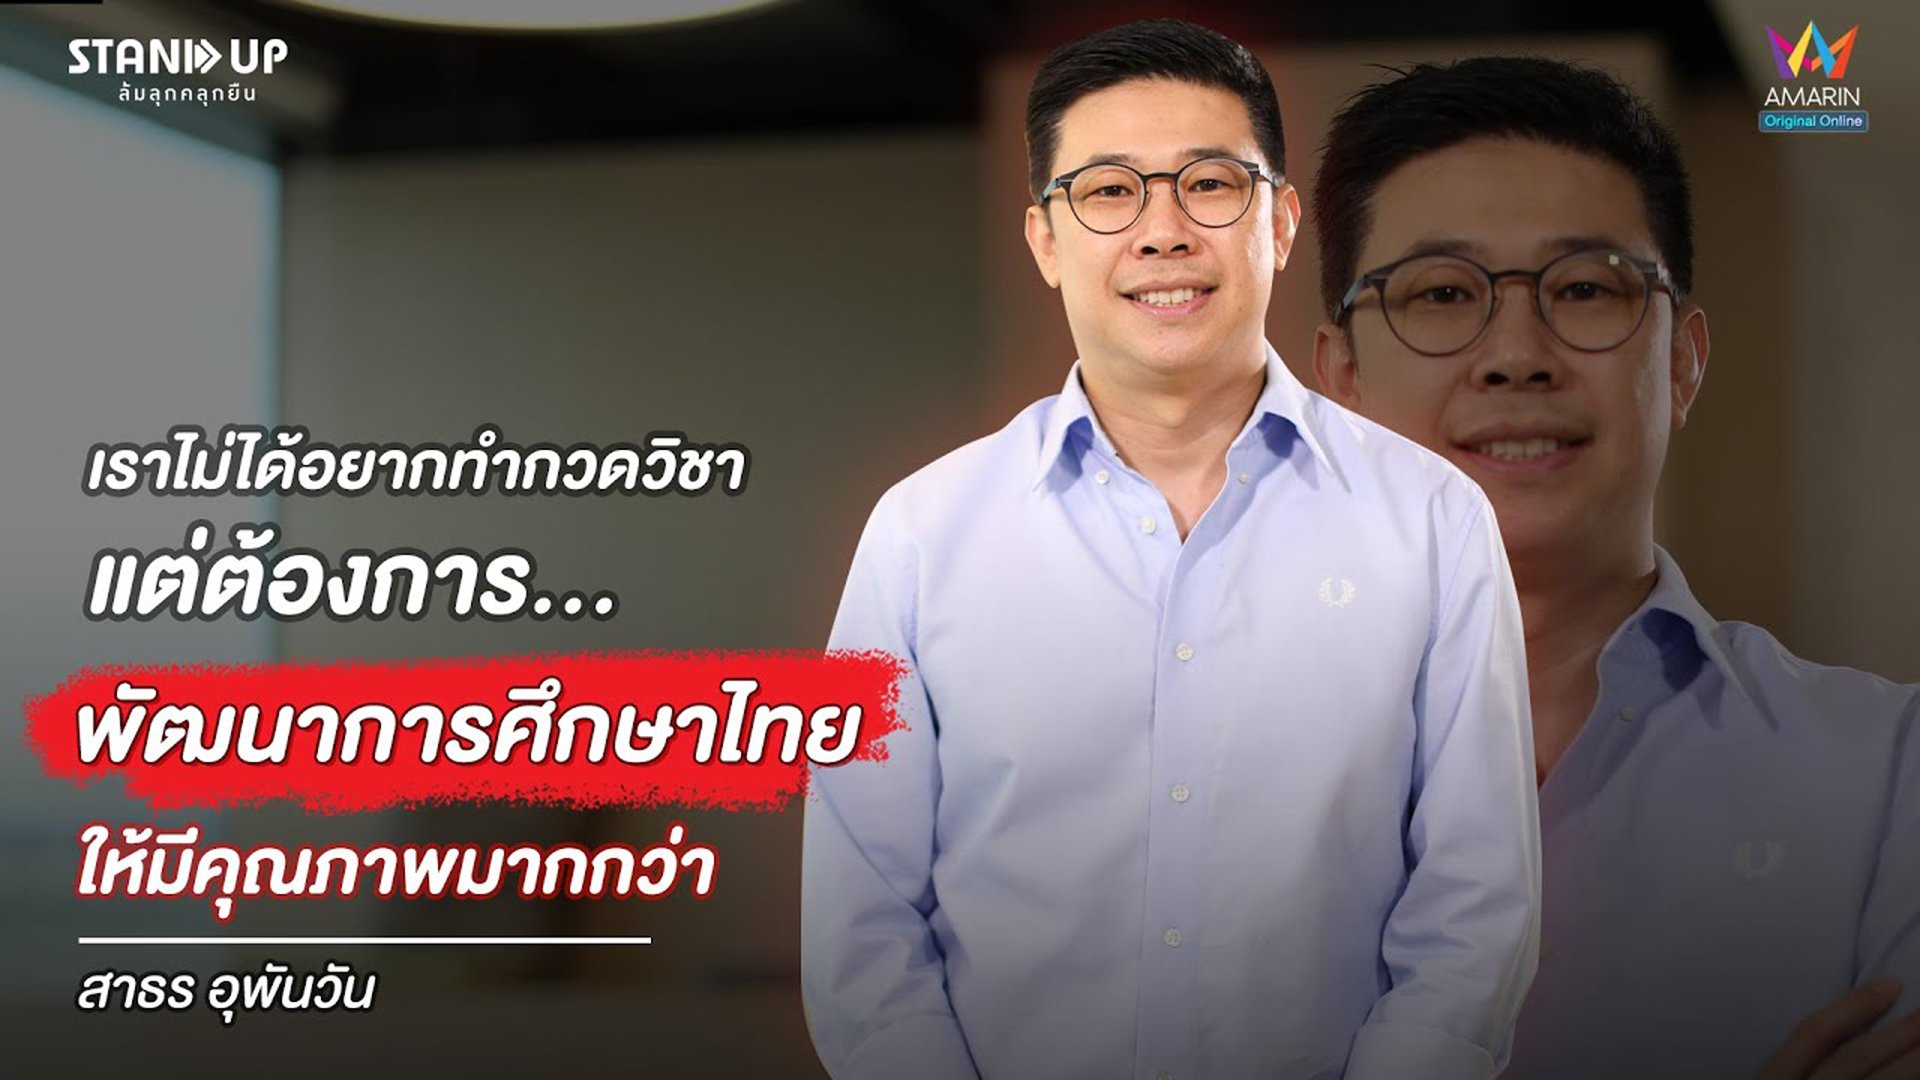 การศึกษาไทยยุค New Normal ด้วยหลักการ "OMO" | Stand Up ล้มลุกคลุกยืน | 8 มิ.ย. 64 | AMARIN TVHD34